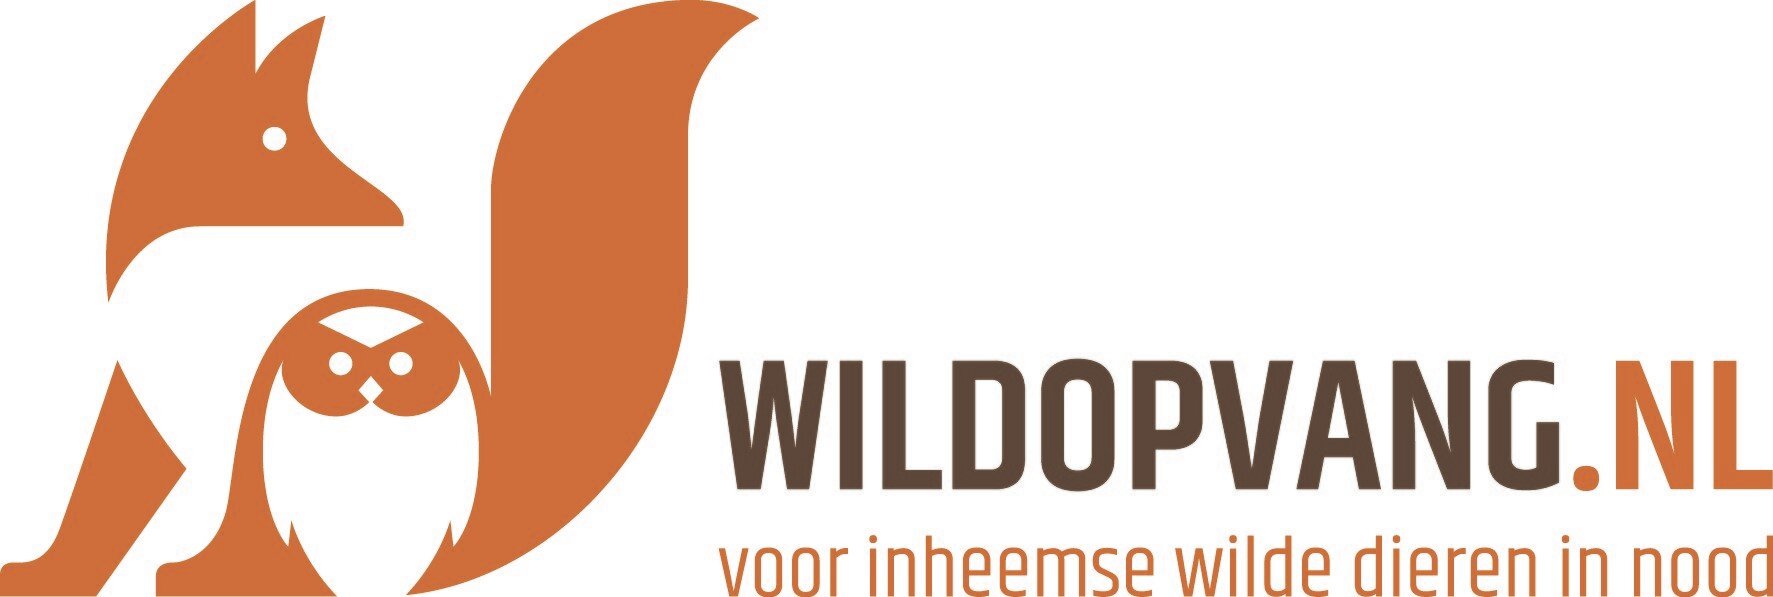 Stg. Wildopvang.nl